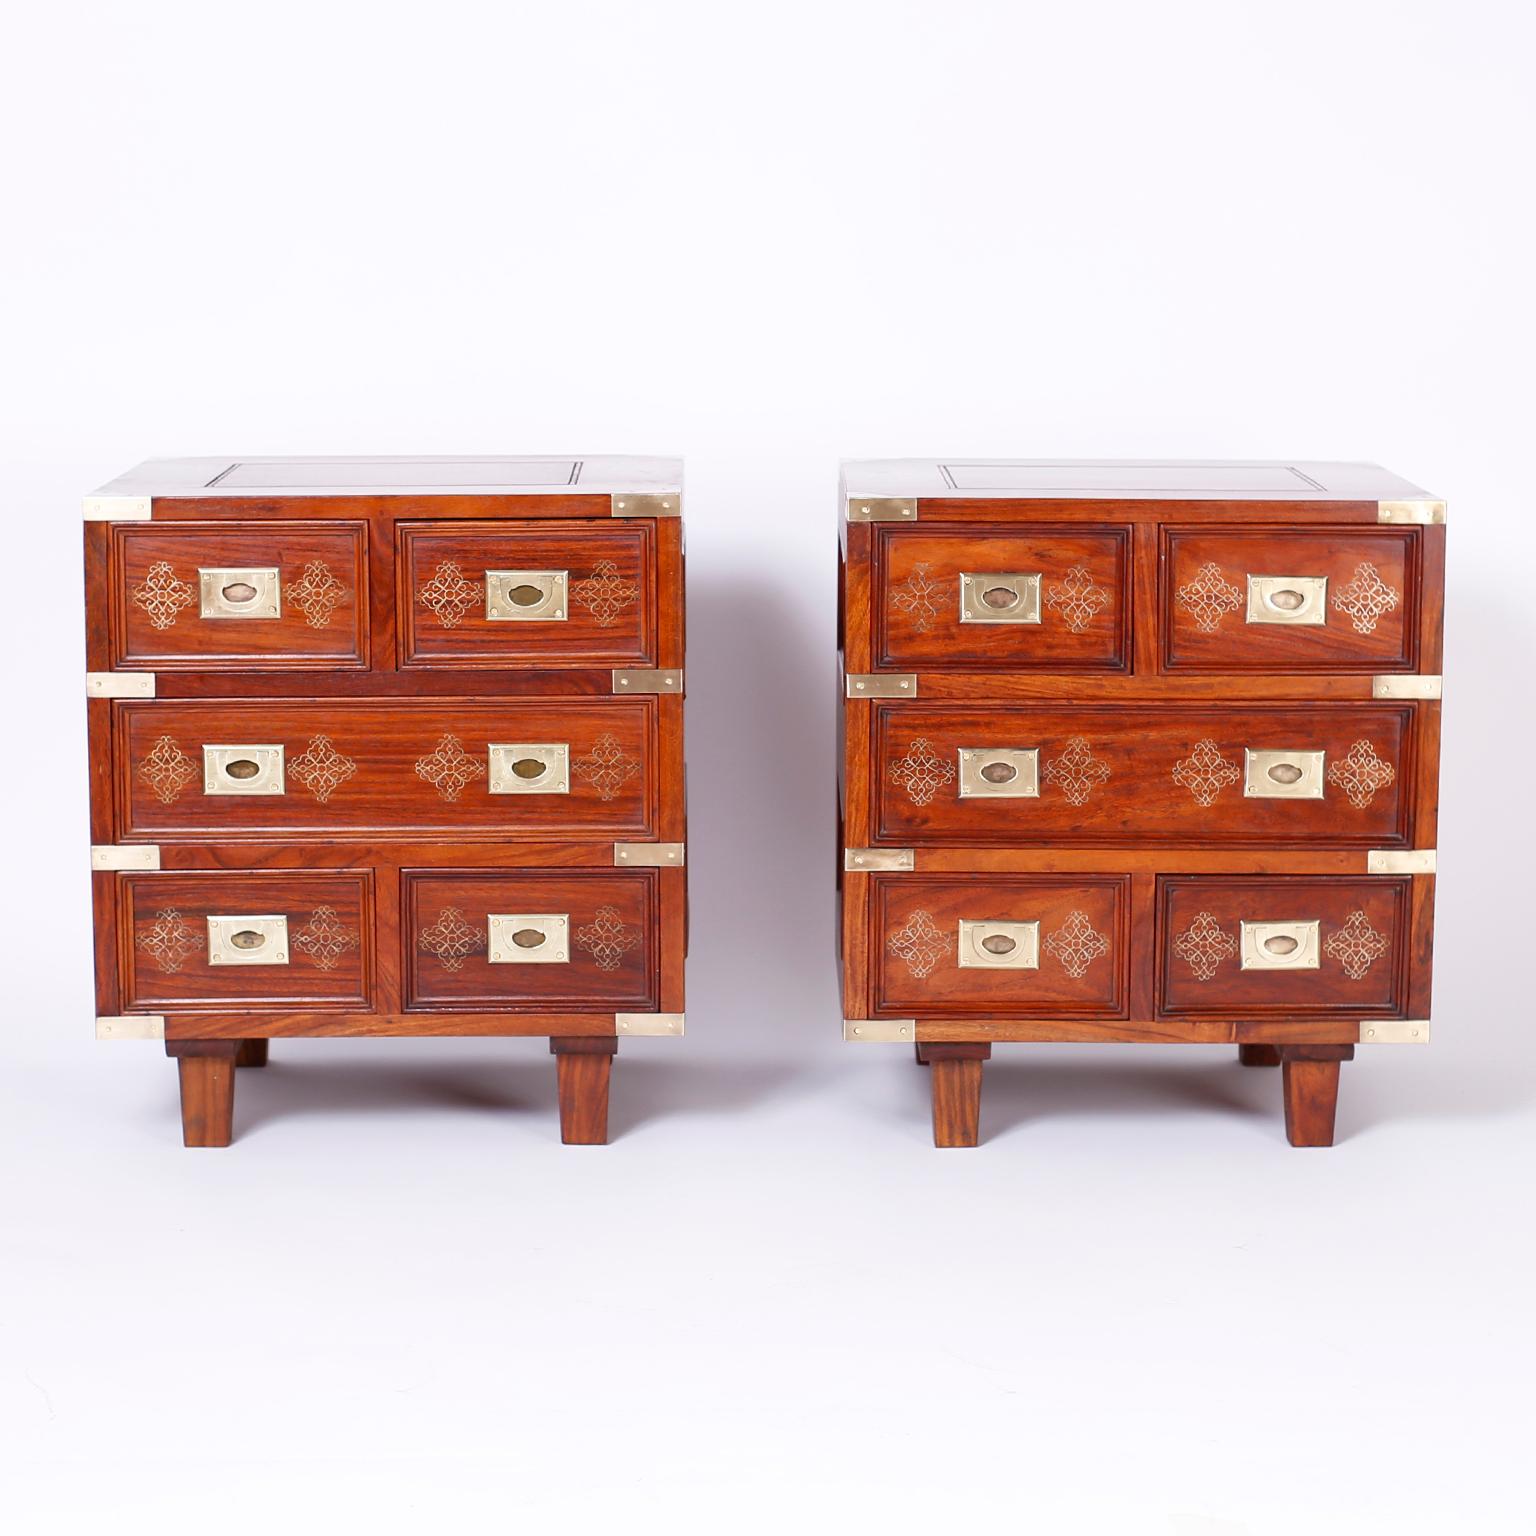 Paire de meubles à cinq tiroirs de style colonial britannique, fabriqués en bois de rose indigène, avec des côtés et des dessus lambrissés, des ferrures de campagne en laiton et des motifs floraux incrustés en laiton.